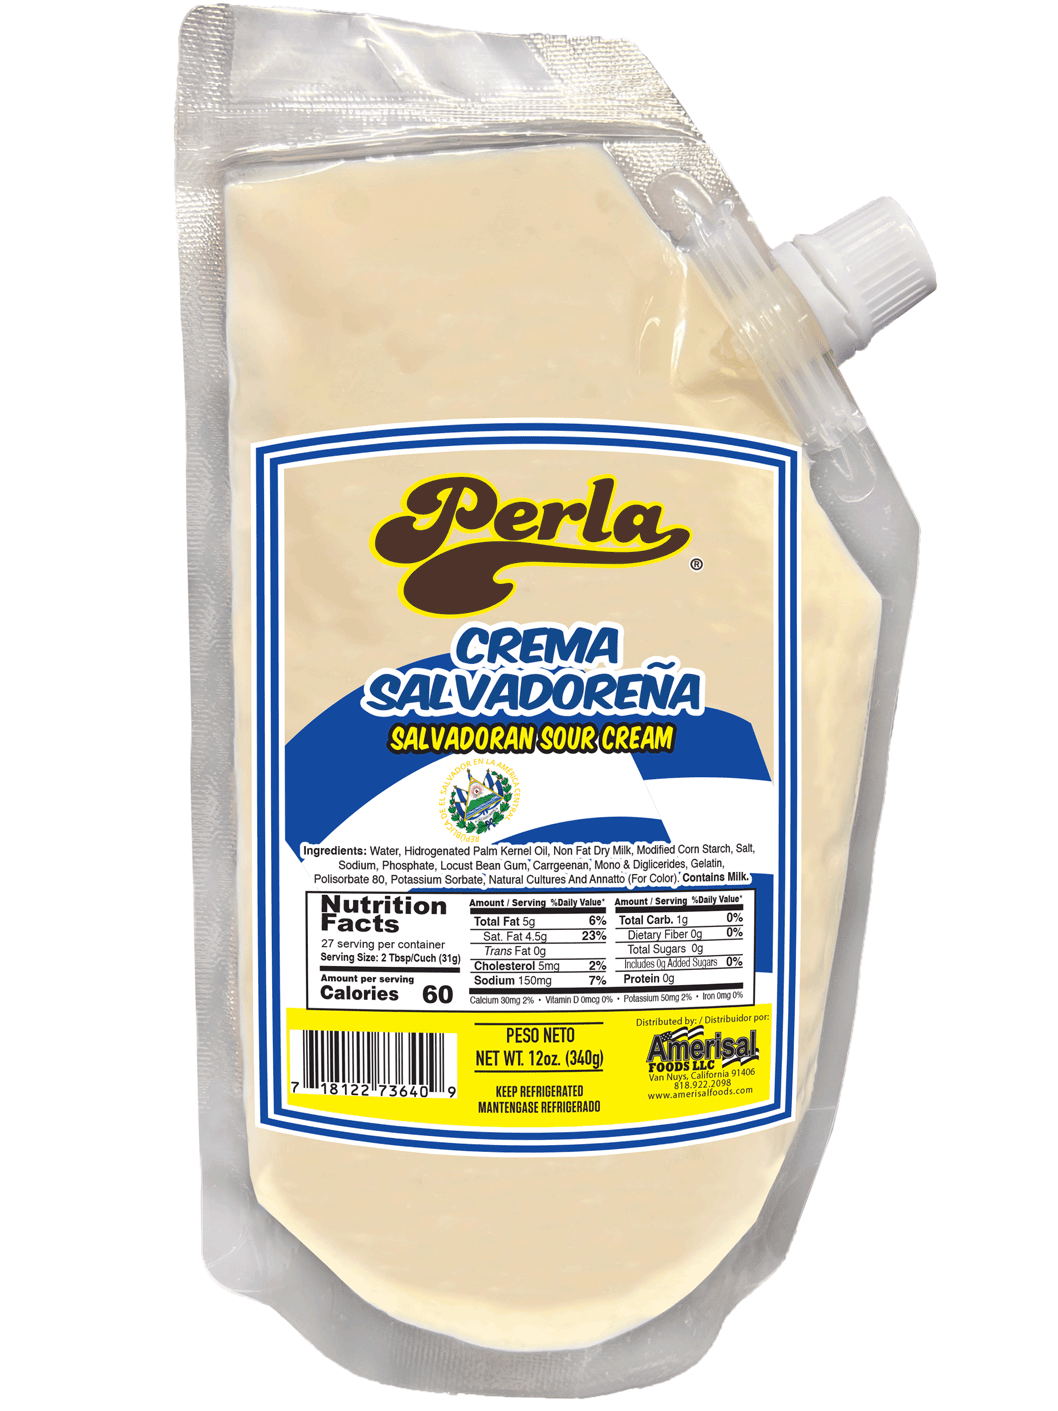 Perla Crema Salvadorena (Salvadoran Cream) 12oz